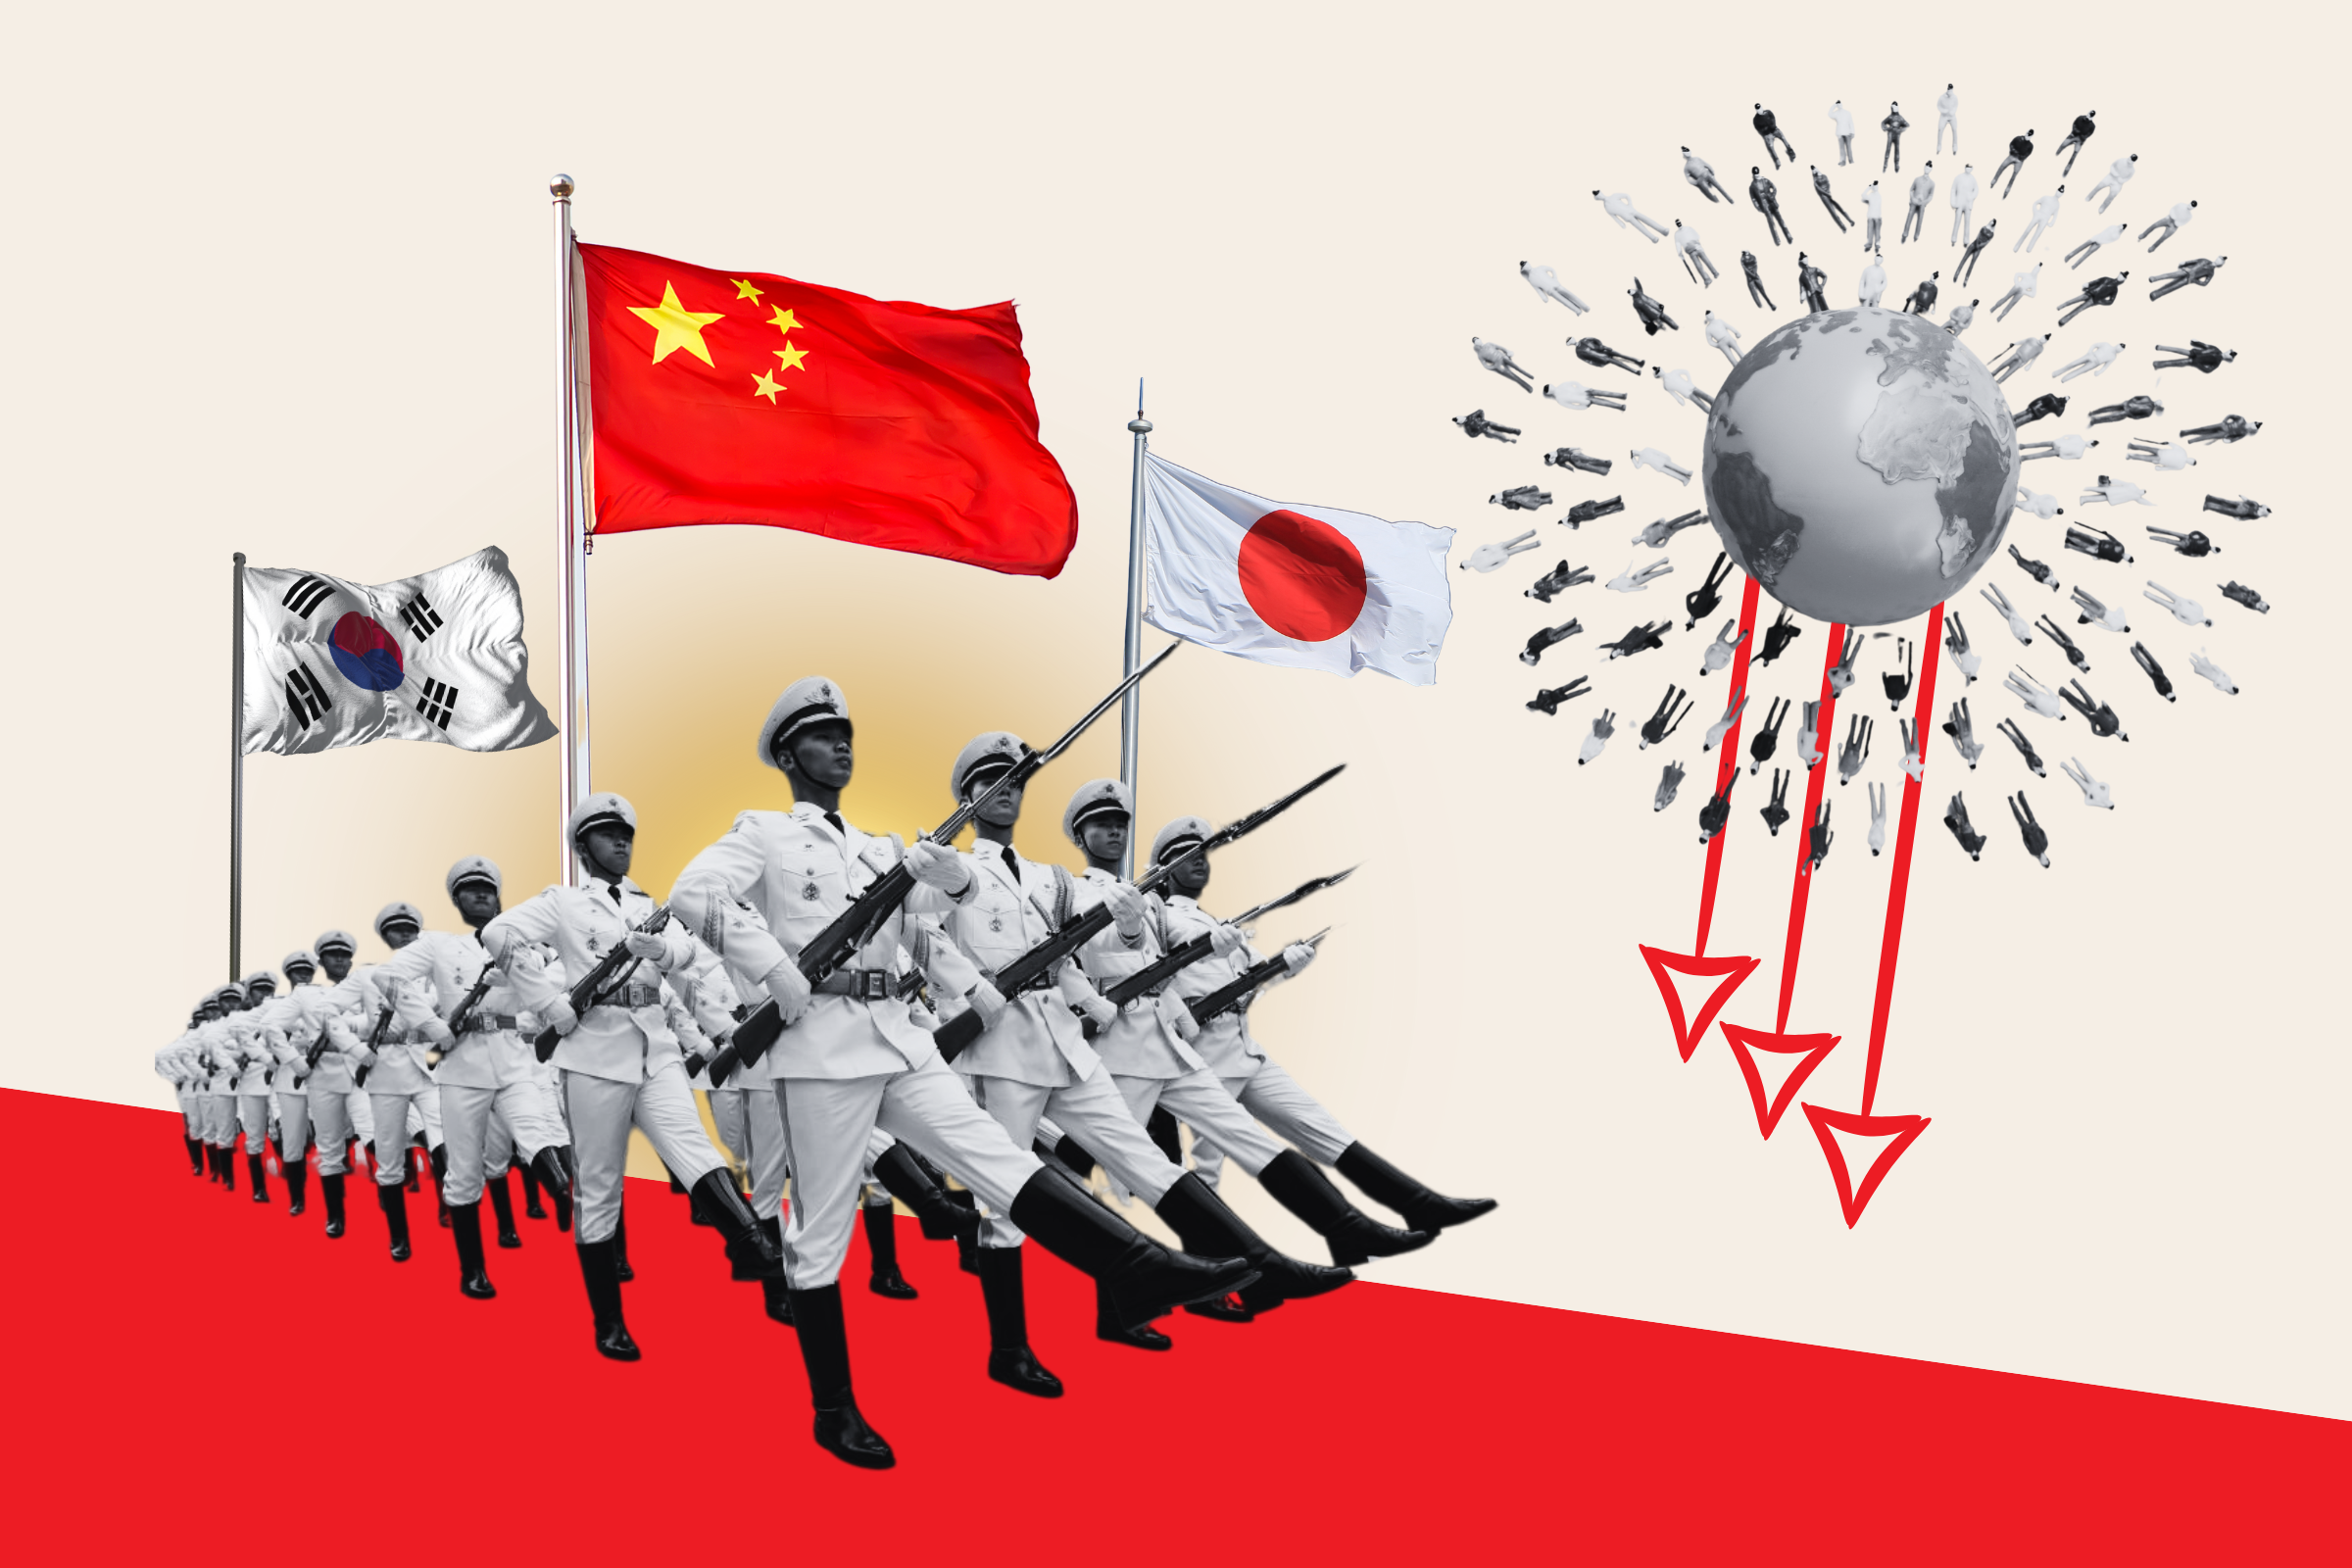 Les crises démographiques pourraient-elles nuire aux puissances militaires asiatiques ?